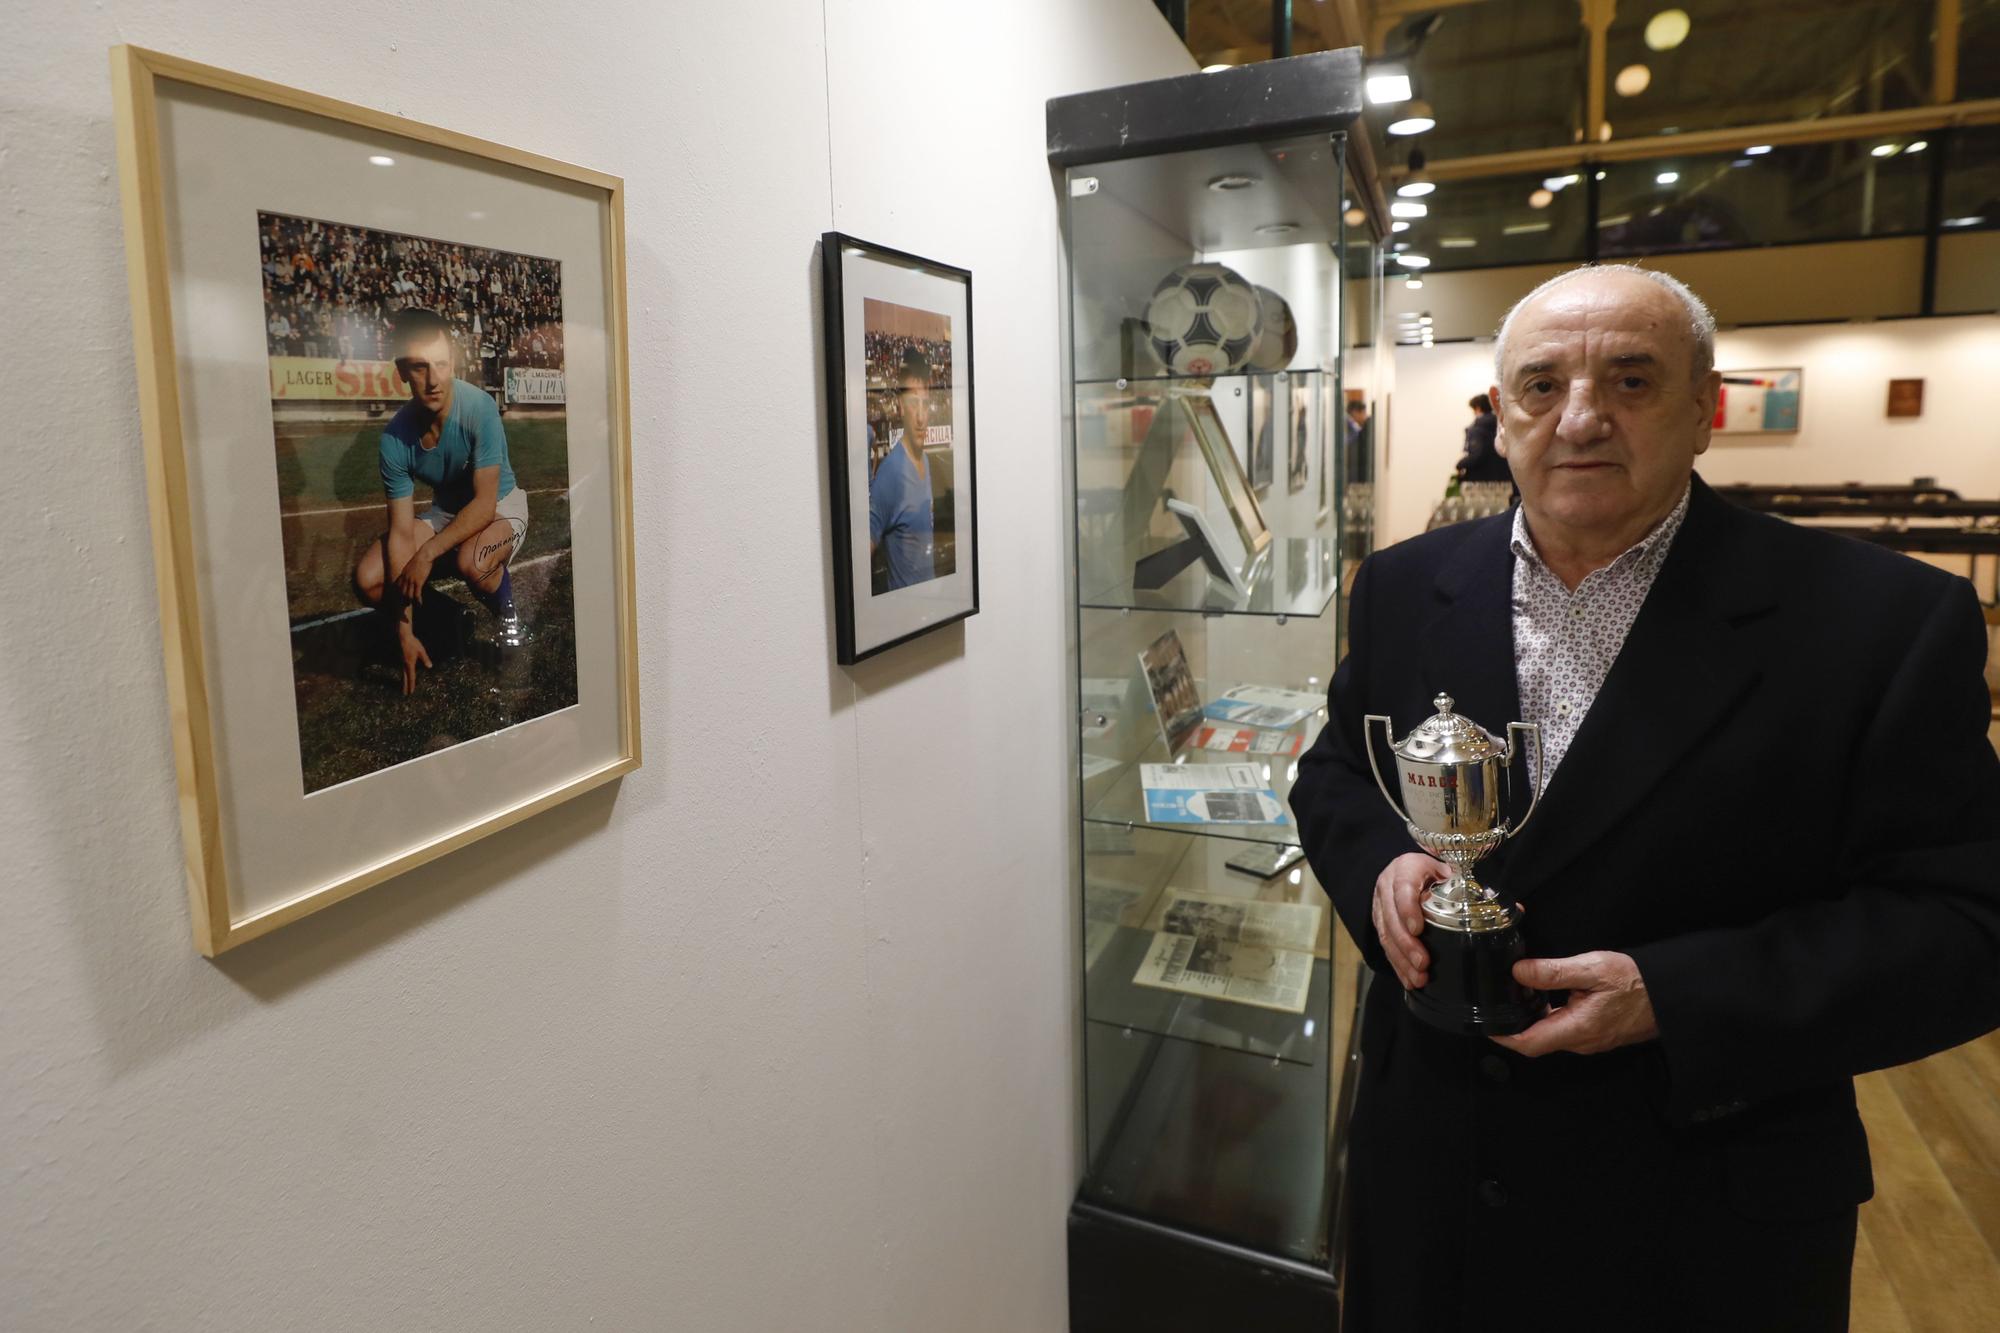 En imágenes: La Fundación Real Oviedo inaugura una exposición sobre la carrera de Marianín